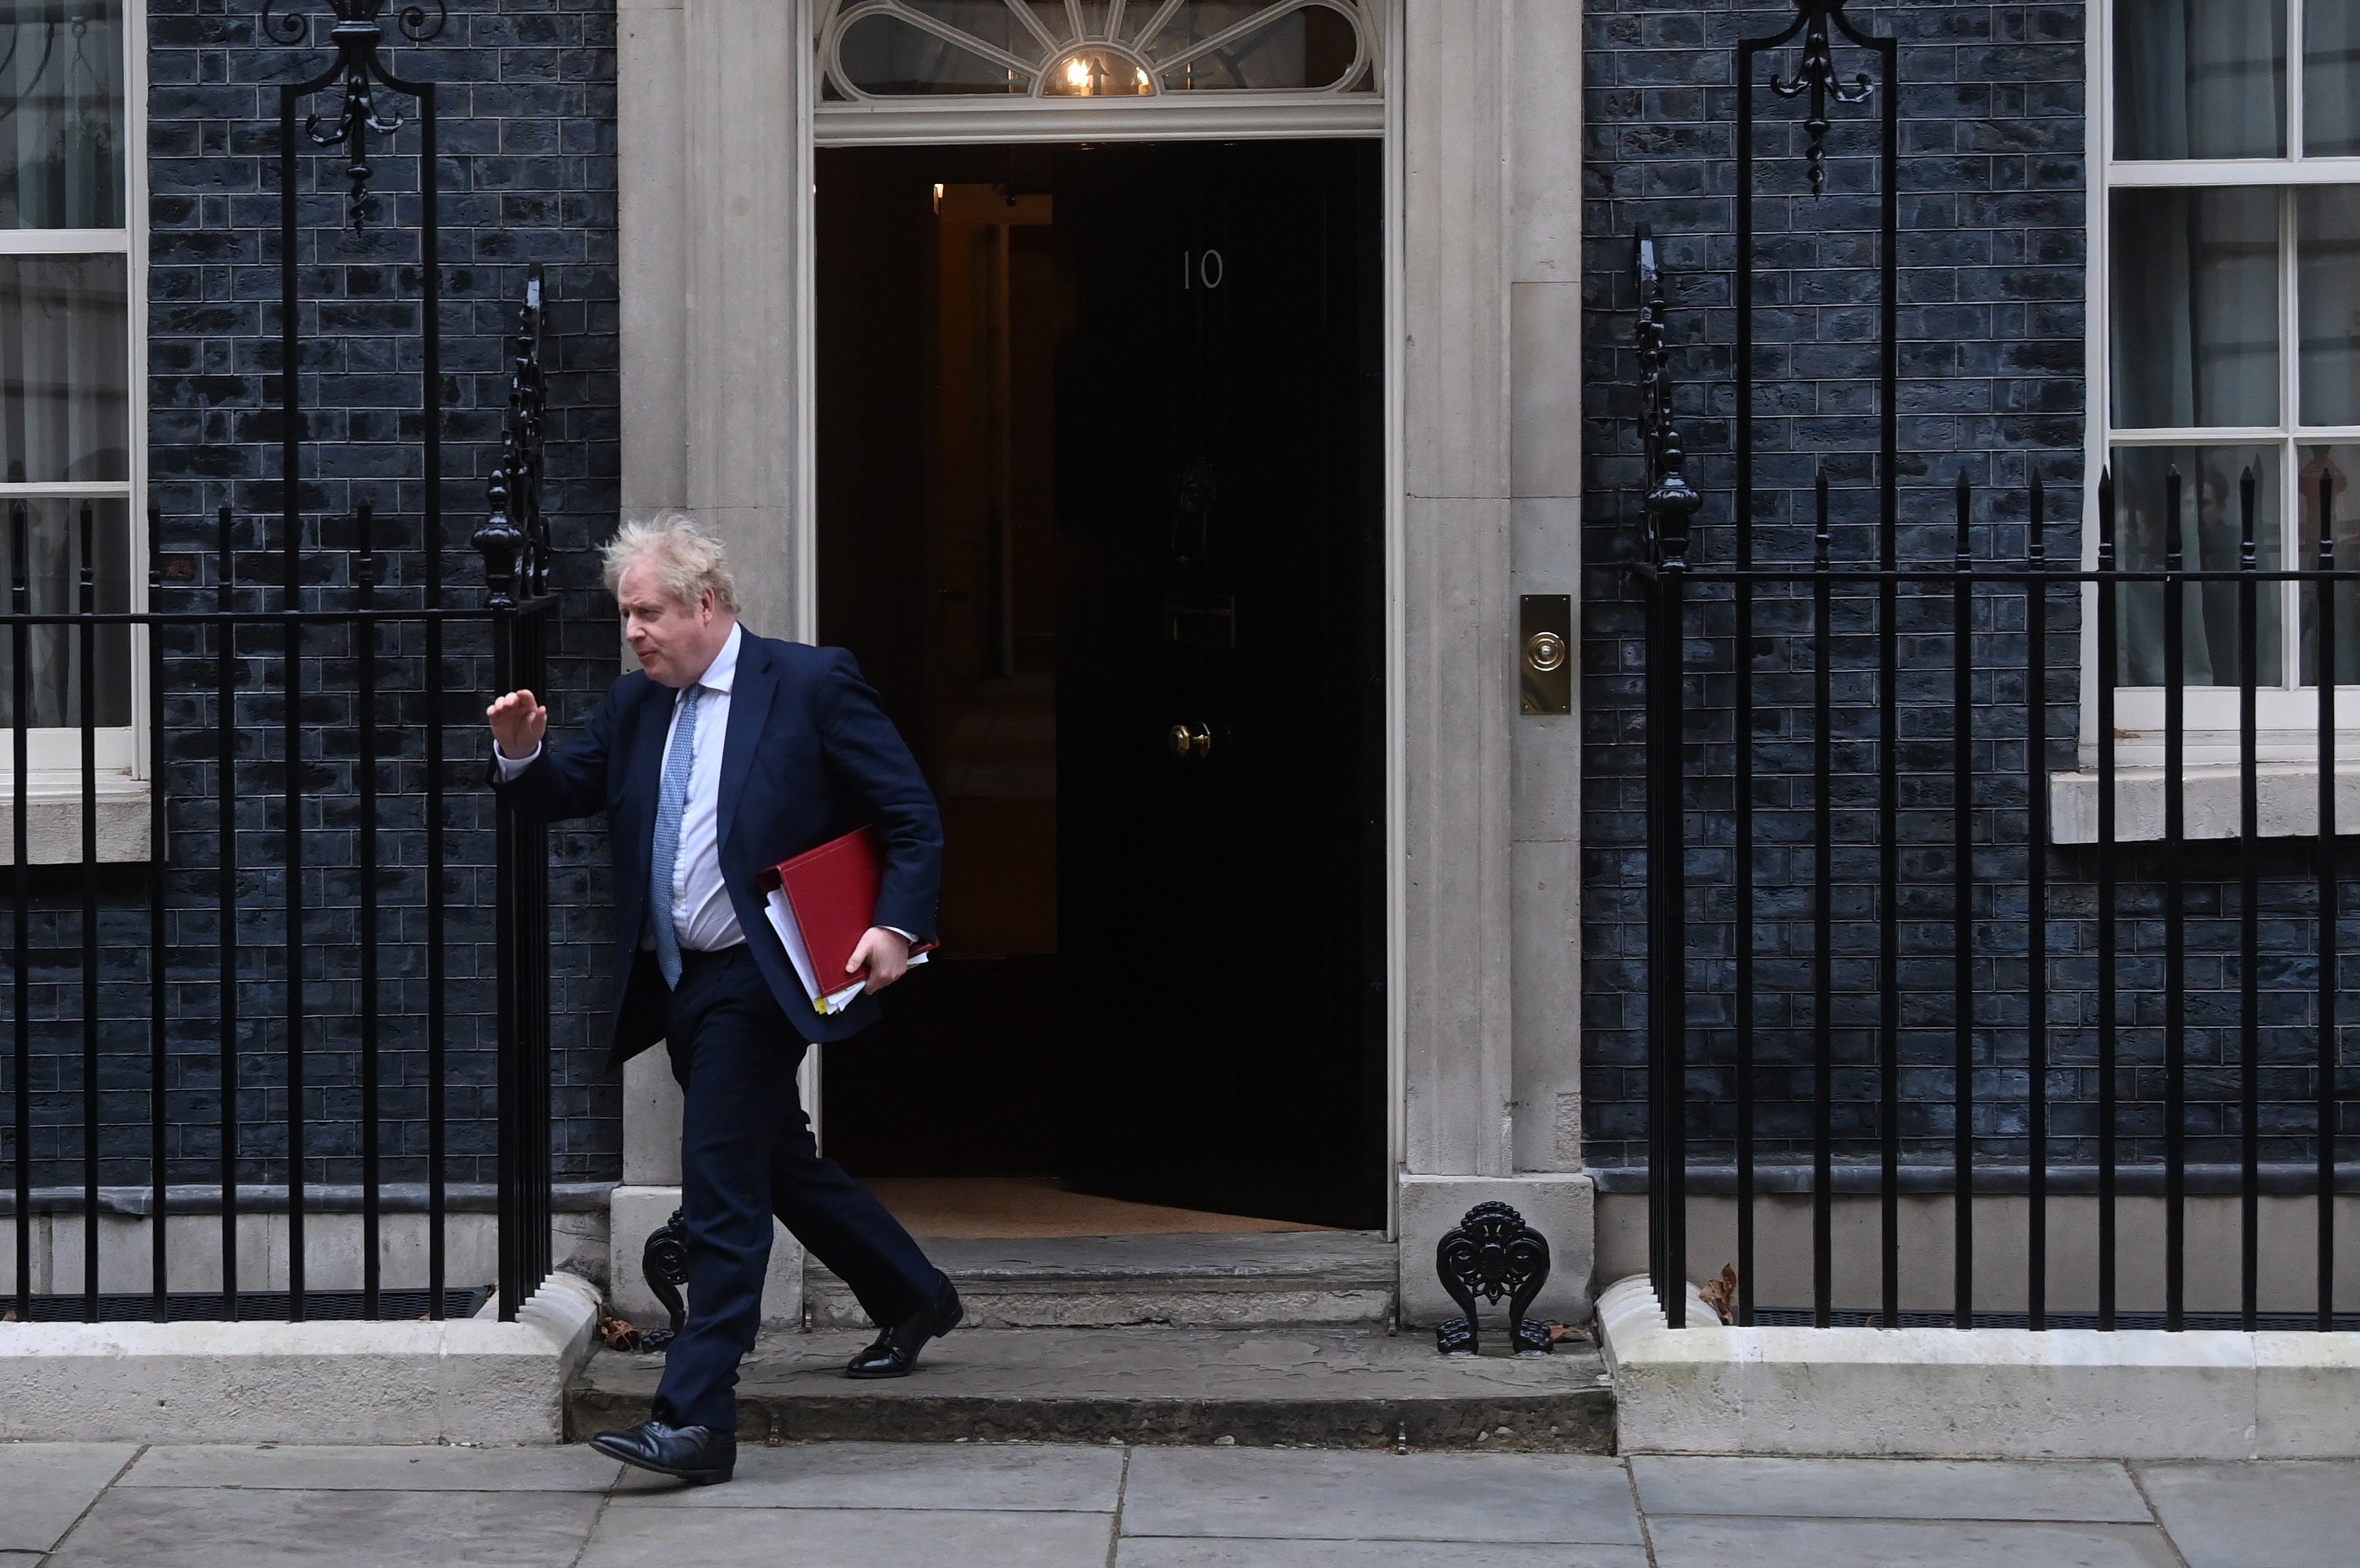 Johnson podría ser investigado ahora por sobornos en una reforma de Downing Street